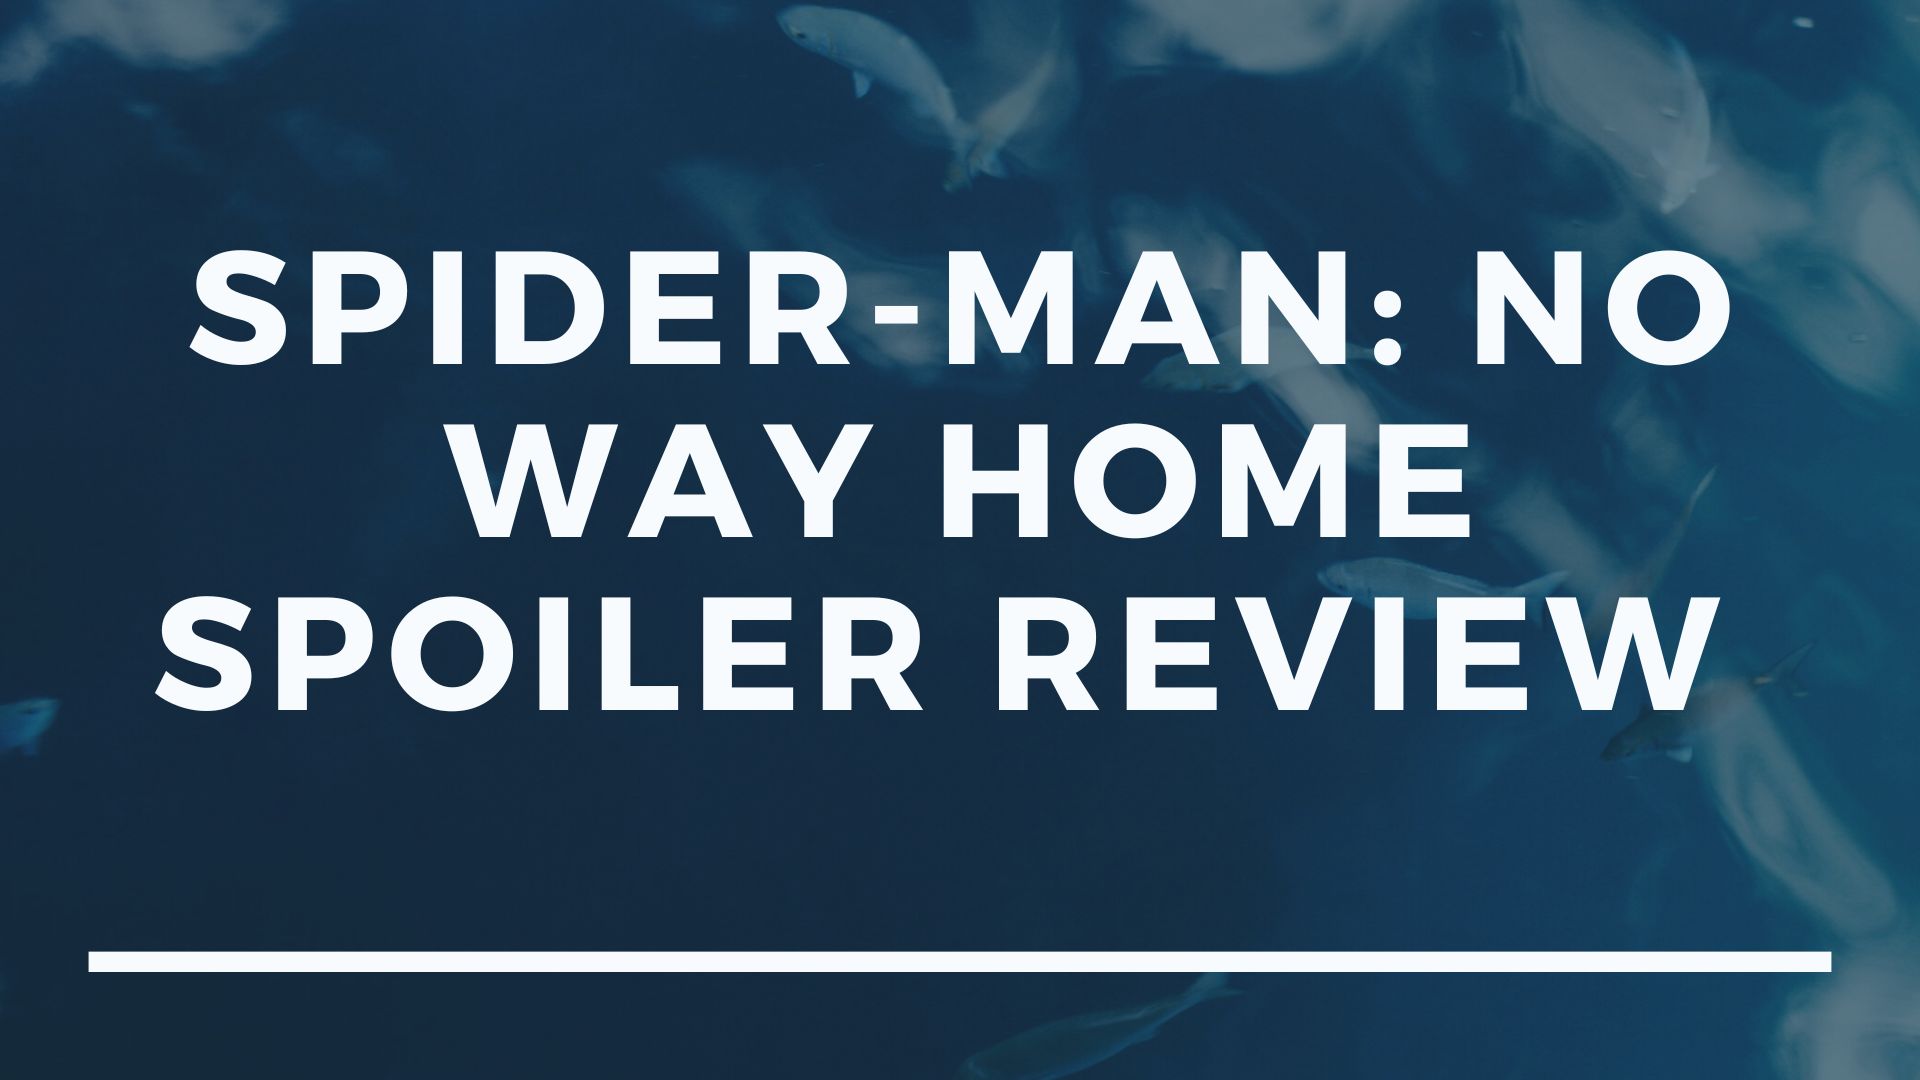 Spider-Man: No Way Home Spoiler Review